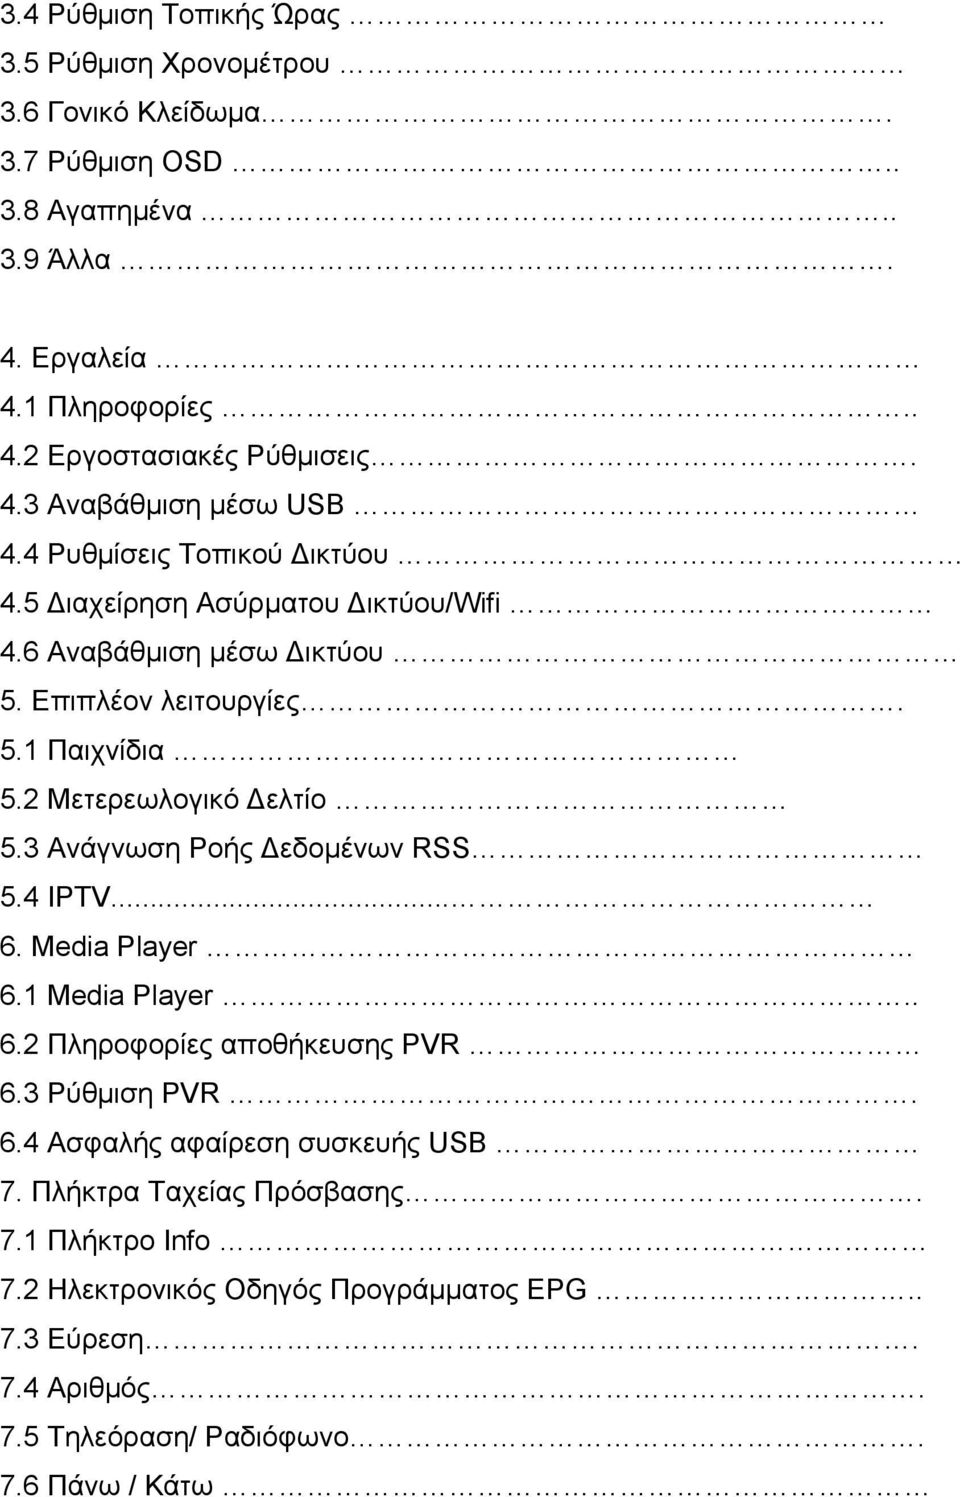 2 Μετερεωλογικό Δελτίο 5.3 Ανάγνωση Ροής Δεδοµένων RSS 5.4 IPTV... 6. Media Player 6.1 Media Player.. 6.2 Πληροφορίες αποθήκευσης PVR 6.3 Ρύθµιση PVR. 6.4 Ασφαλής αφαίρεση συσκευής USB 7.